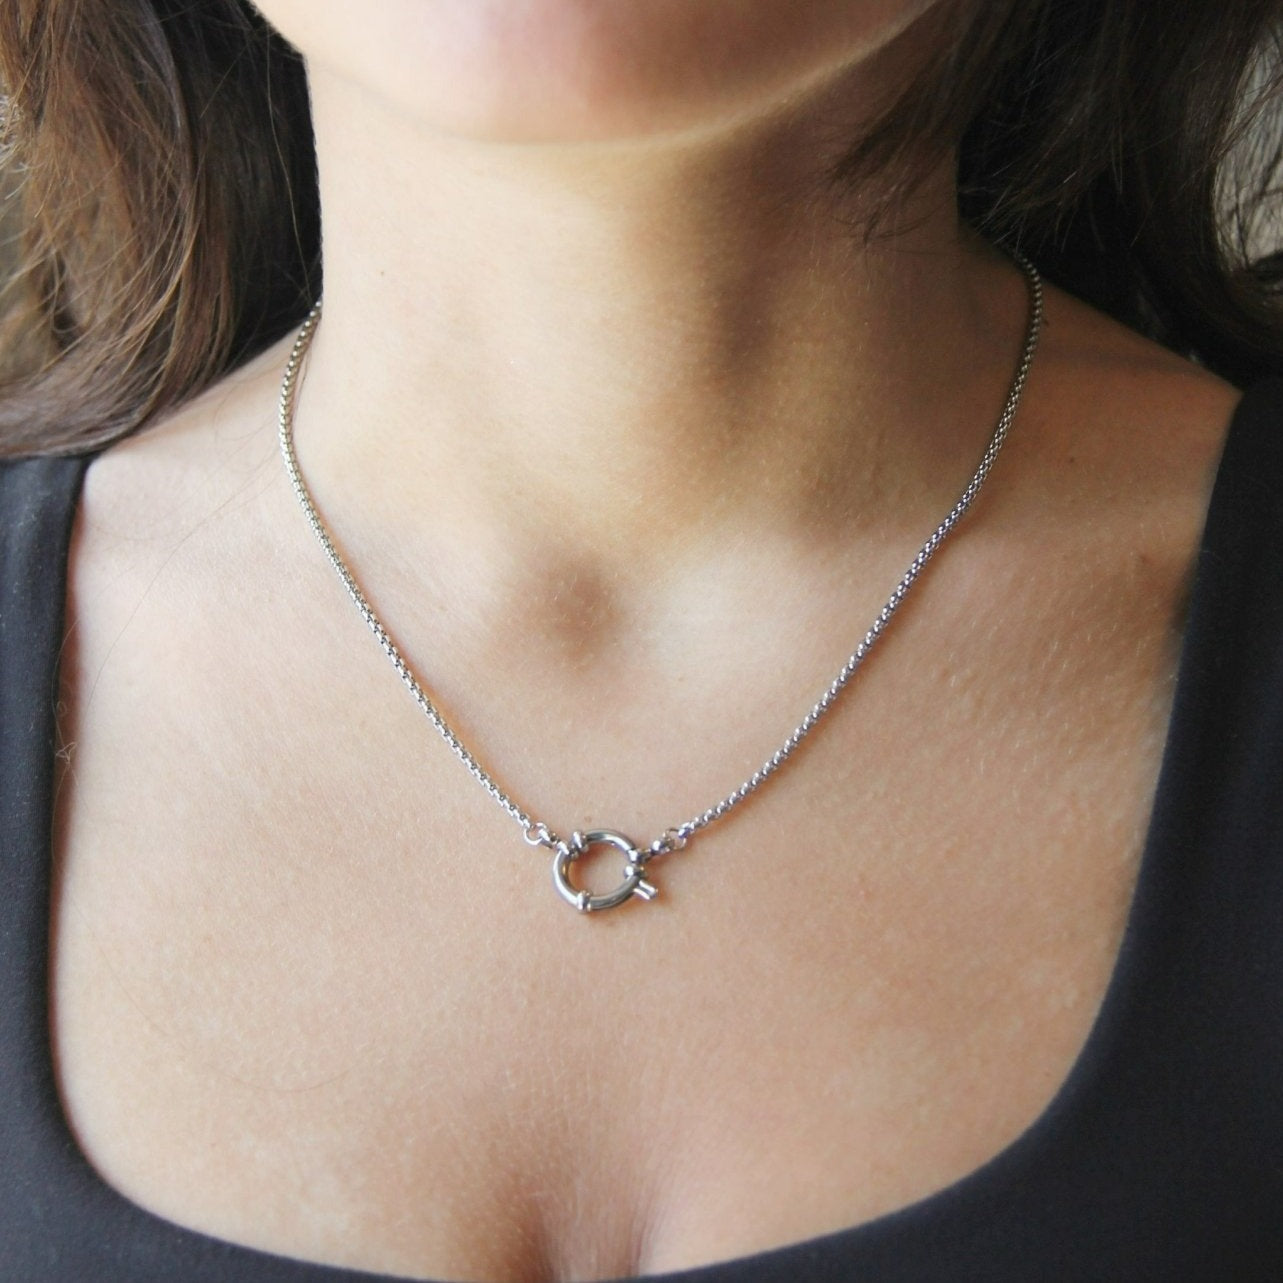 https://wearrenn.com/cdn/shop/products/silver-front-clasp-box-chain-minimalist-necklace-for-women-or-men-boutique-wear-renn-412896.jpg?v=1697308314&width=1445